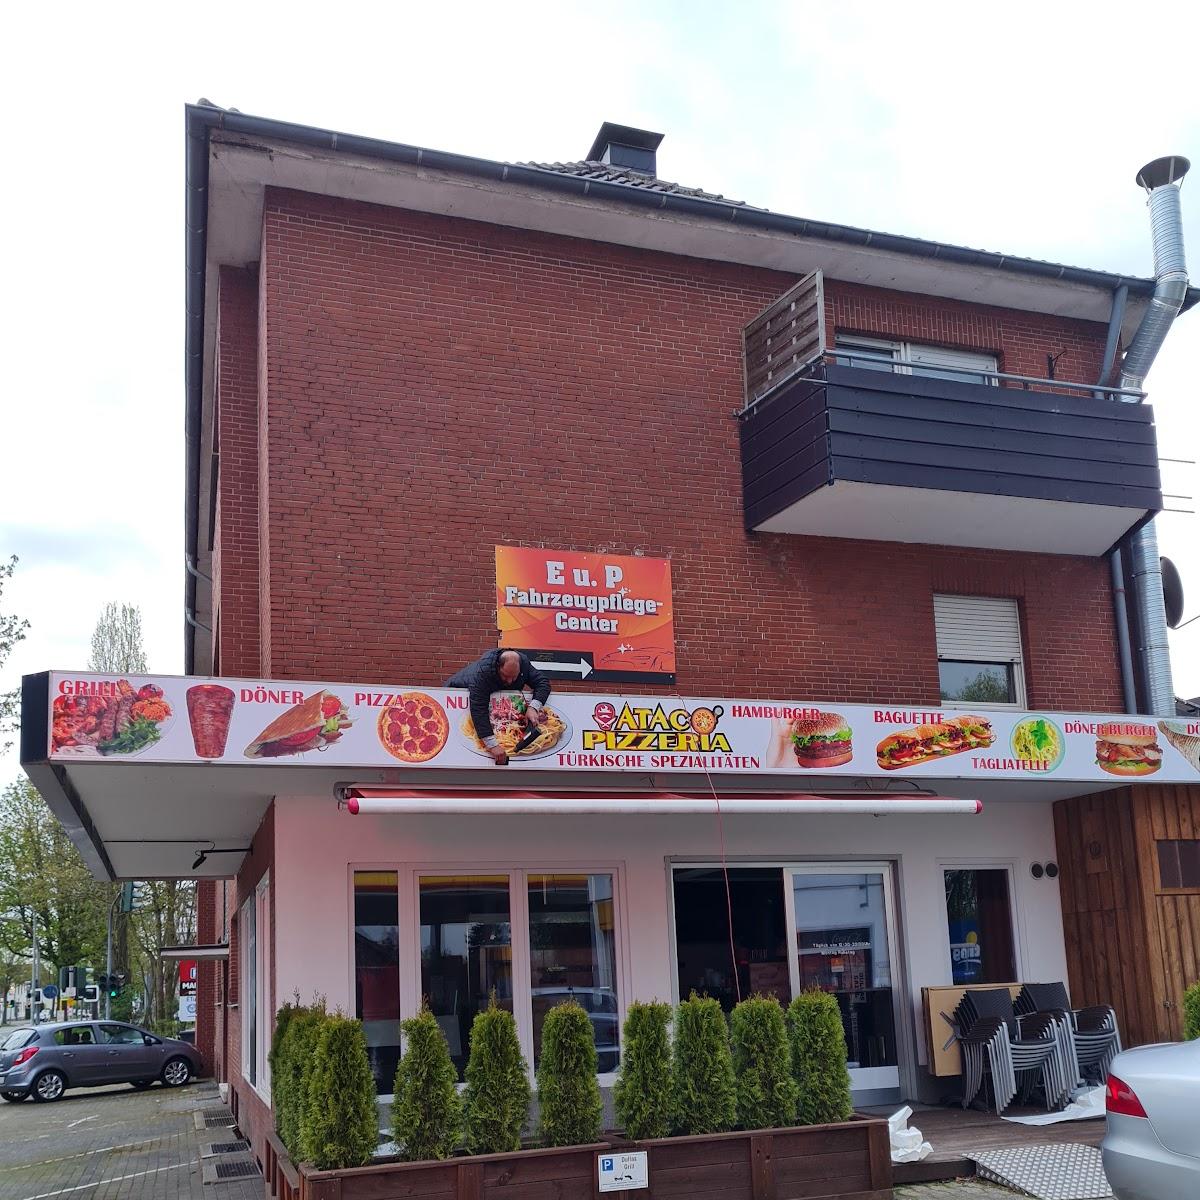 Restaurant "ATAC - Pizzeria - Türkische Spezialitäten" in Haltern am See